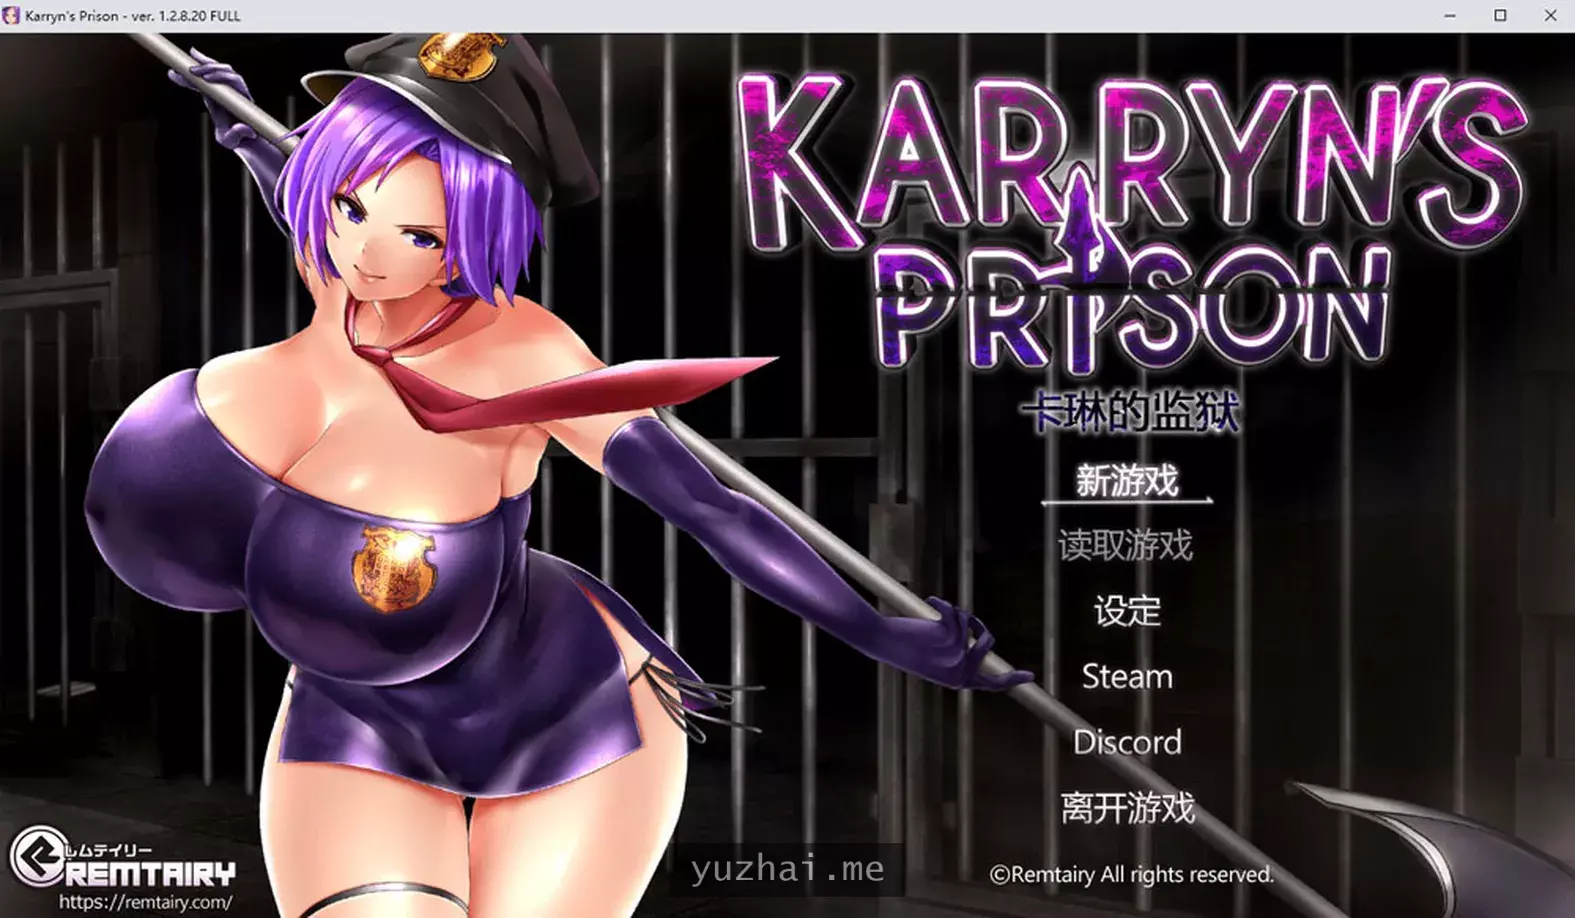 卡琳的监狱Karryn’s Prison V1.2.8.20 FULL官中无修版+全DLC[1.8G] 电脑游戏 第1张